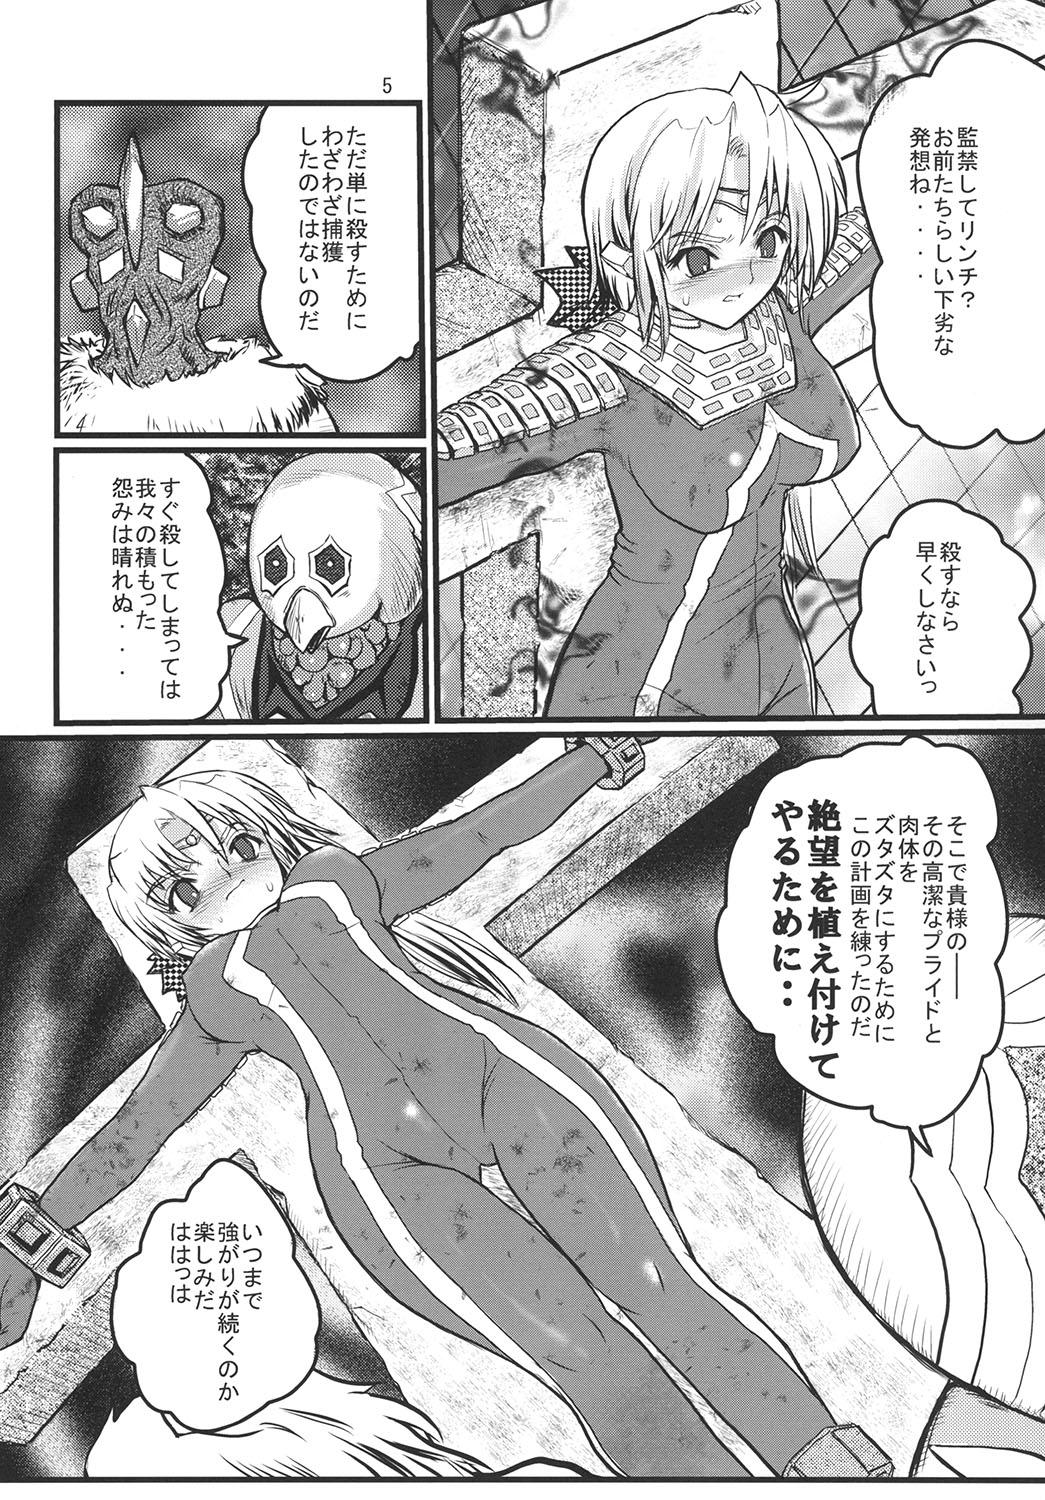 Lady Ultra Nanako Zettaizetsumei! Vol. 2 - Ultraman Three Some - Page 5